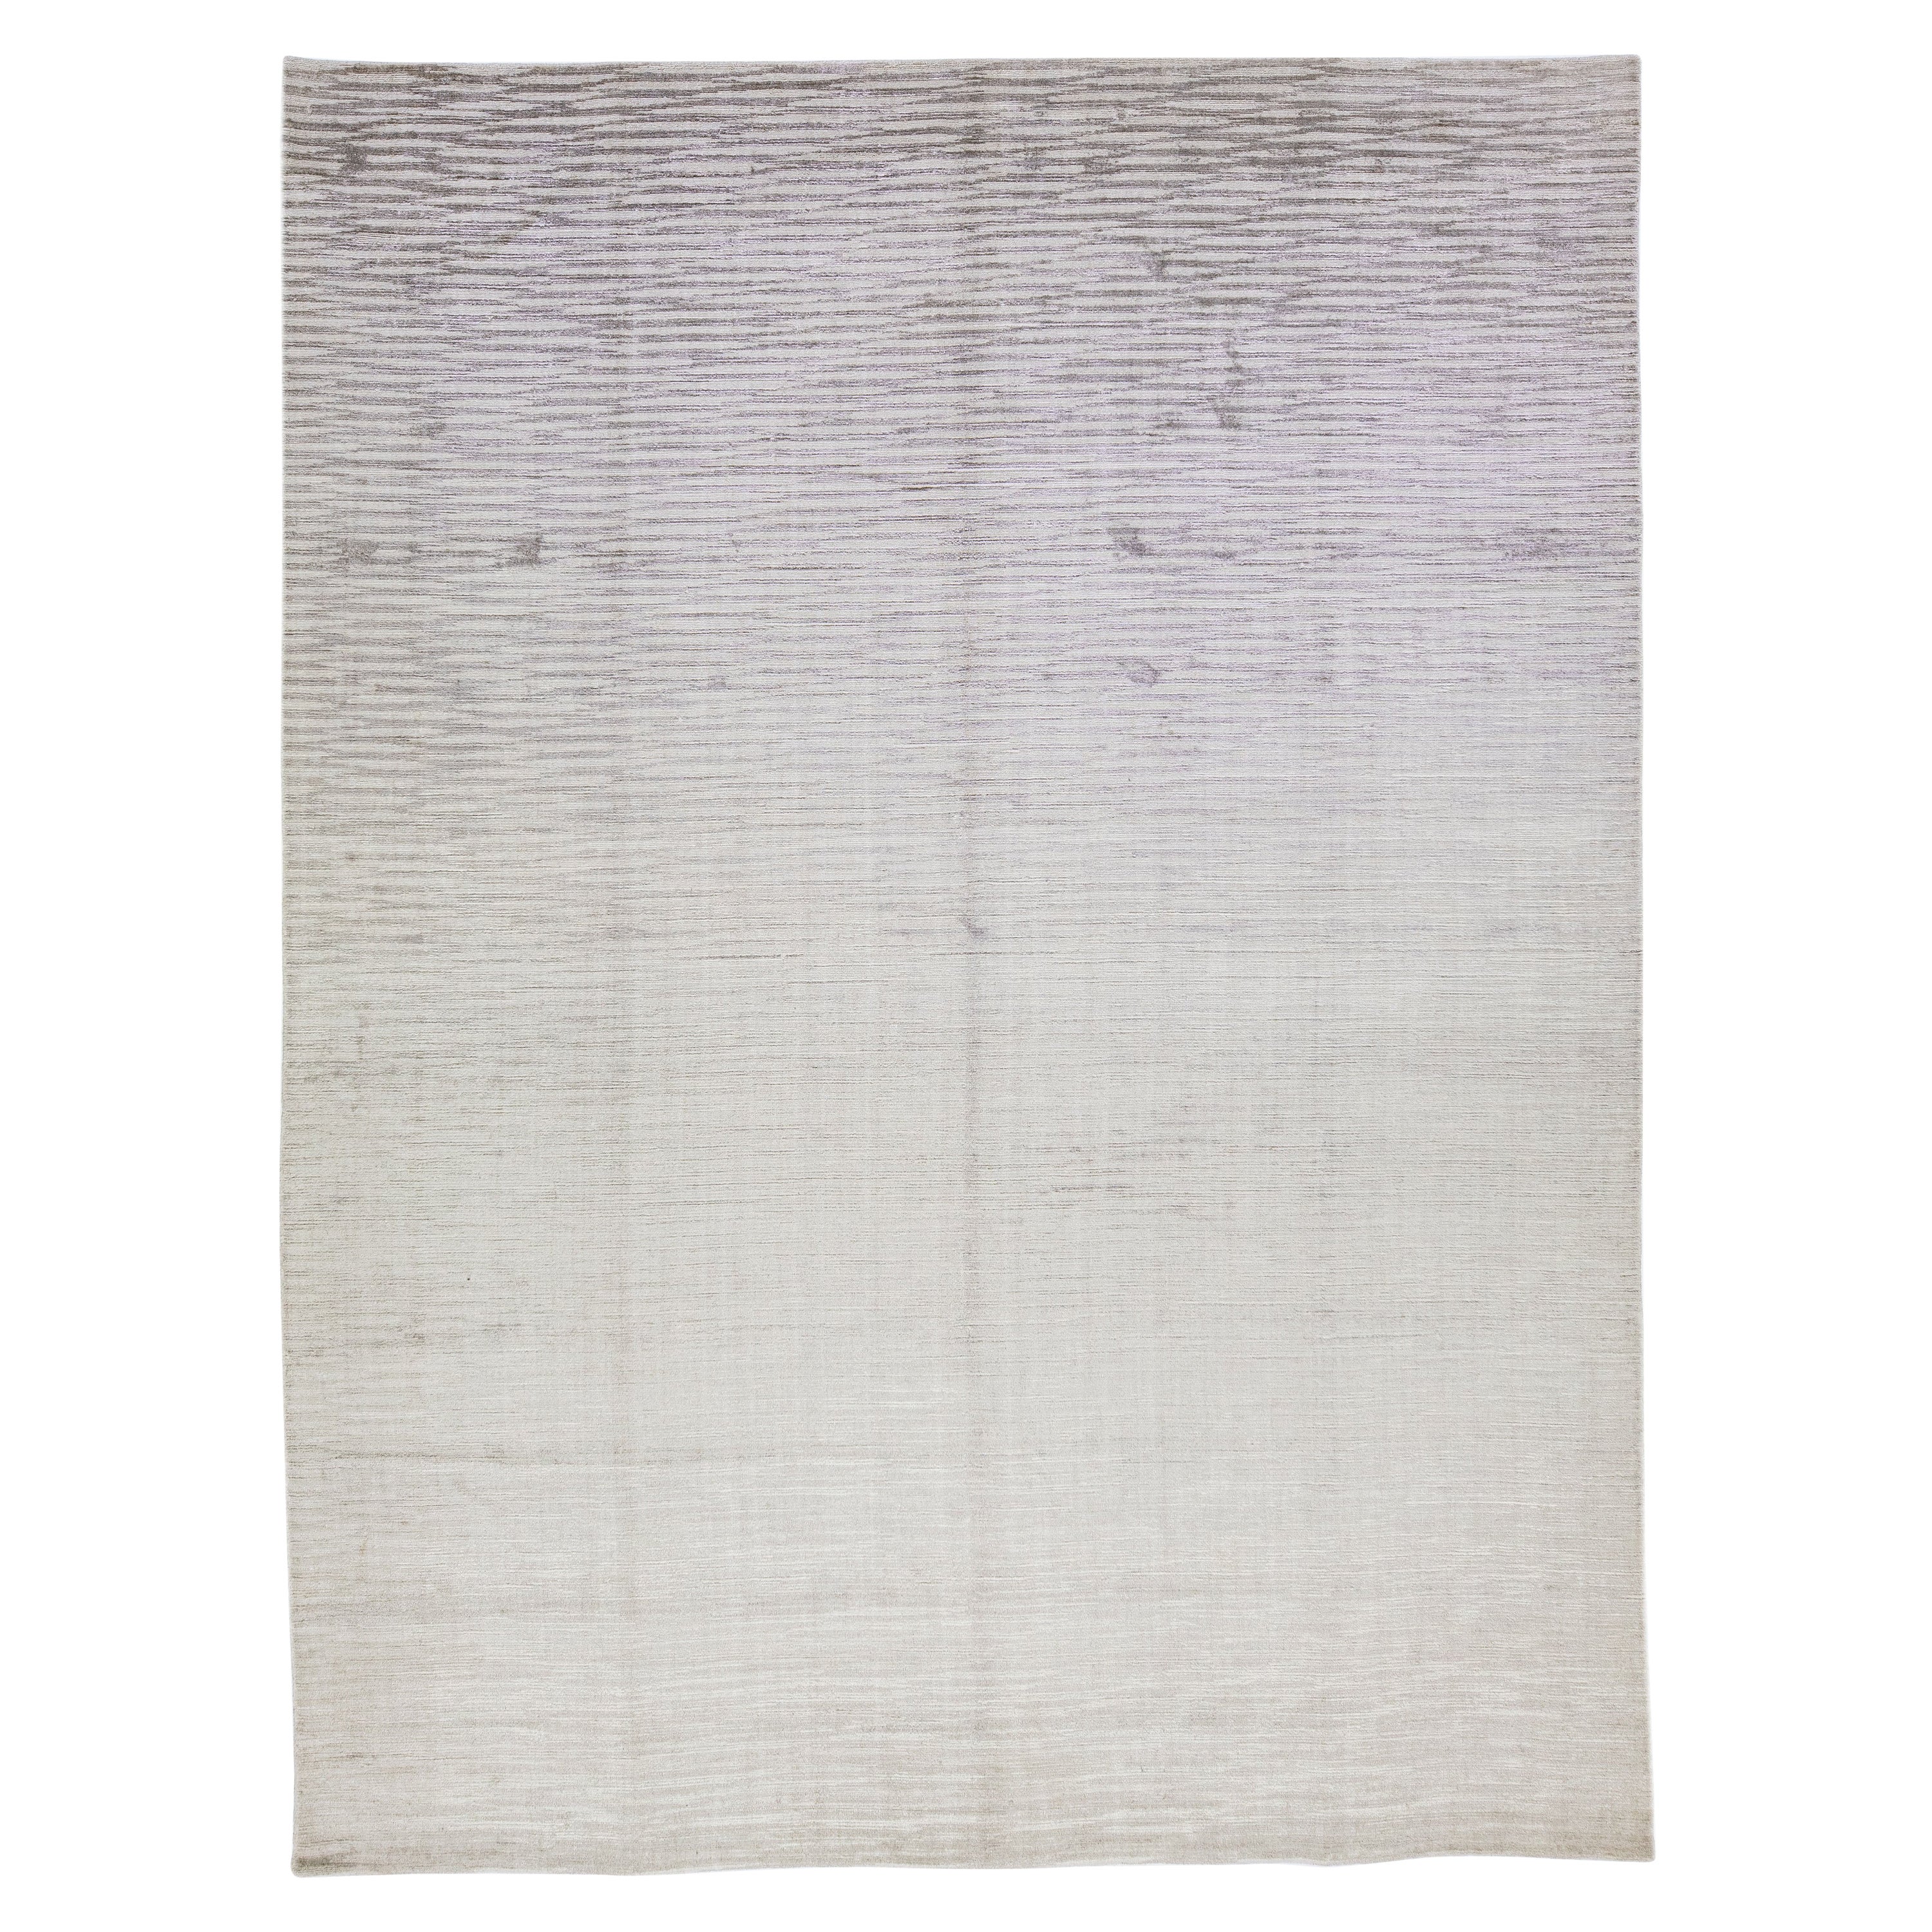  Zeitgenössischer handgefertigter Teppich aus Wolle und Seide mit silbergrauen Streifen-Motiv